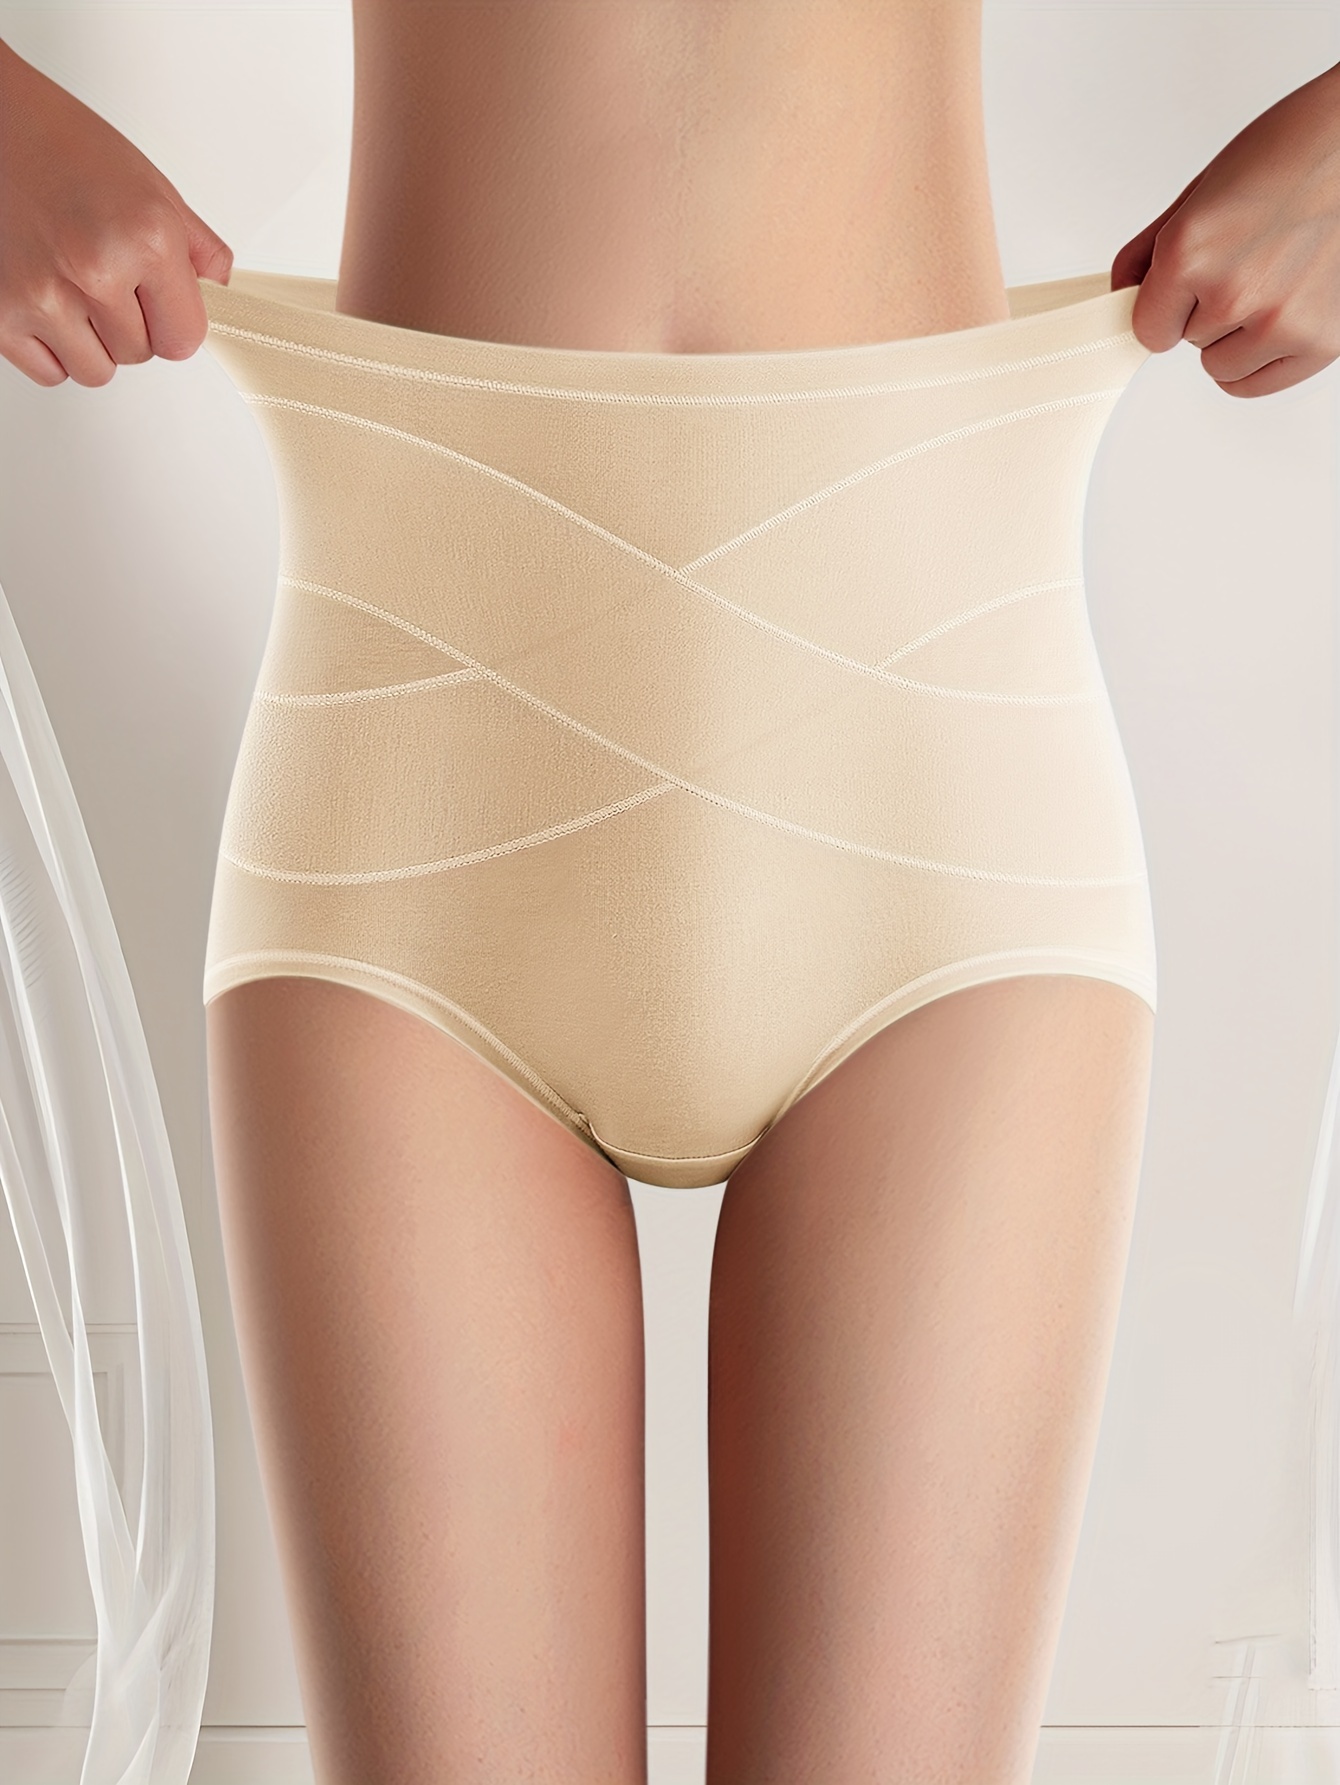 seamless underwear for women womens underwear underwear women